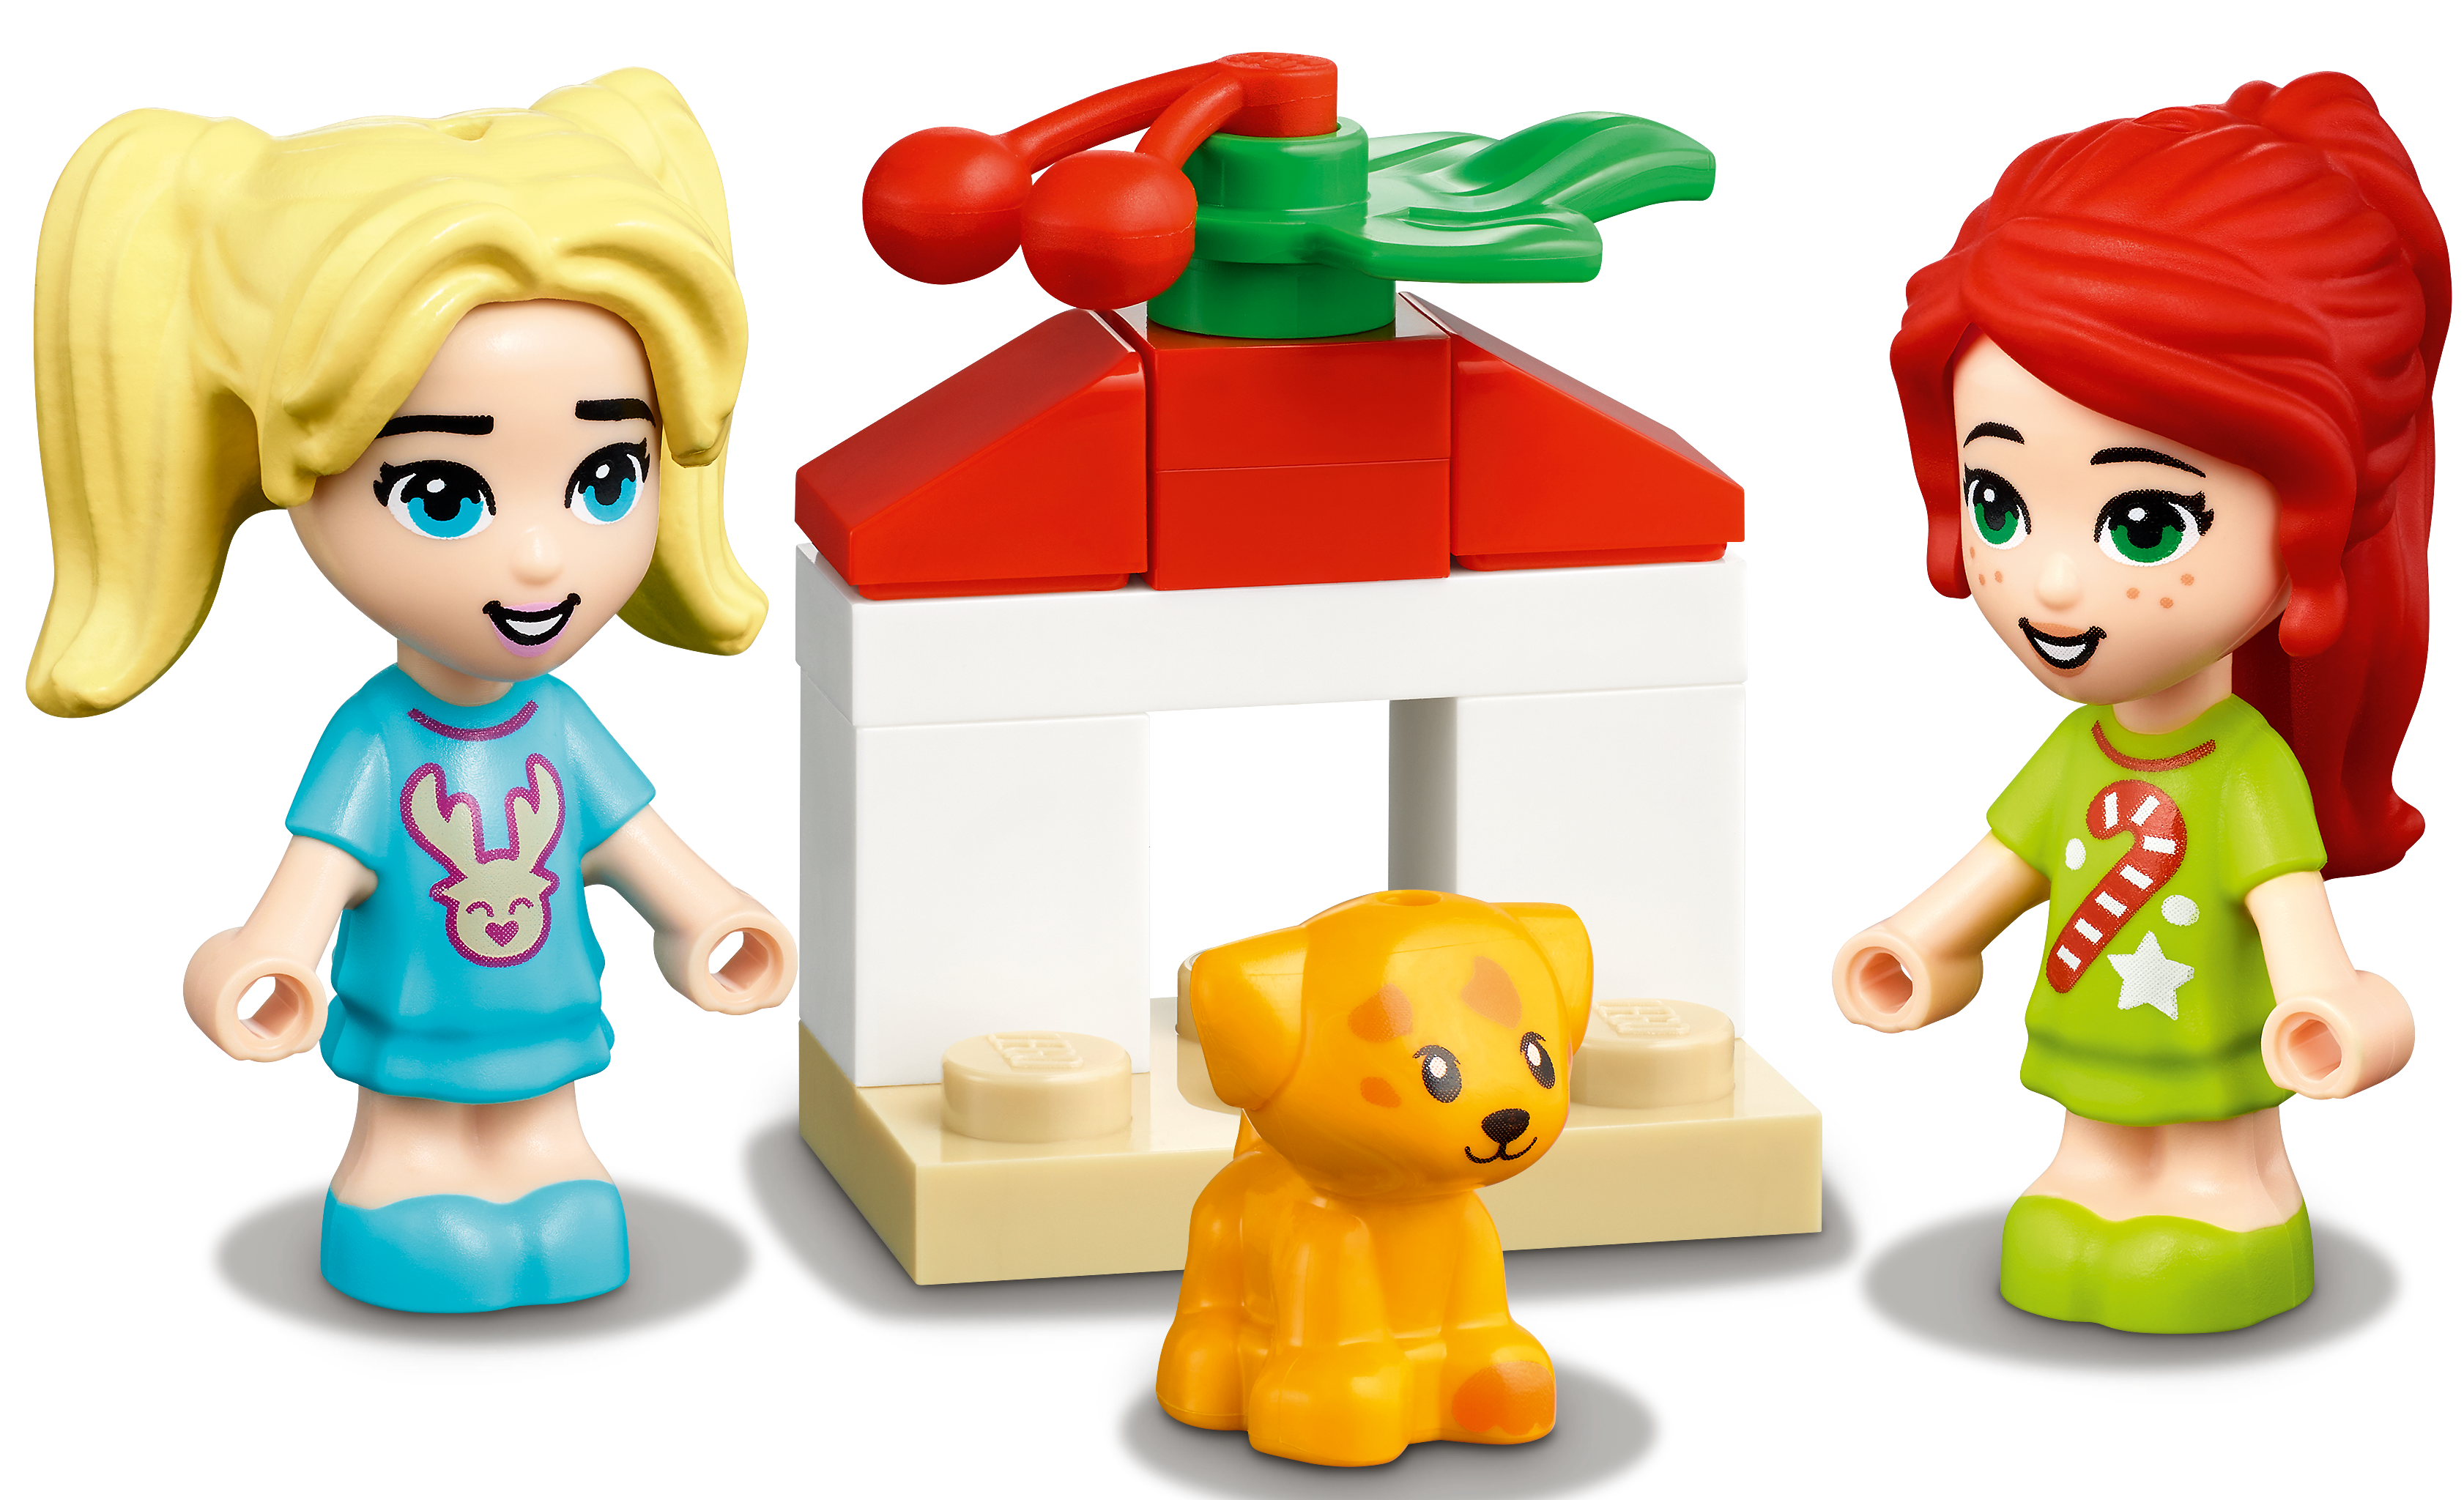 LEGO®-Friends Le Calendrier de l'Avent Friends 2019 Jouet pour Fill